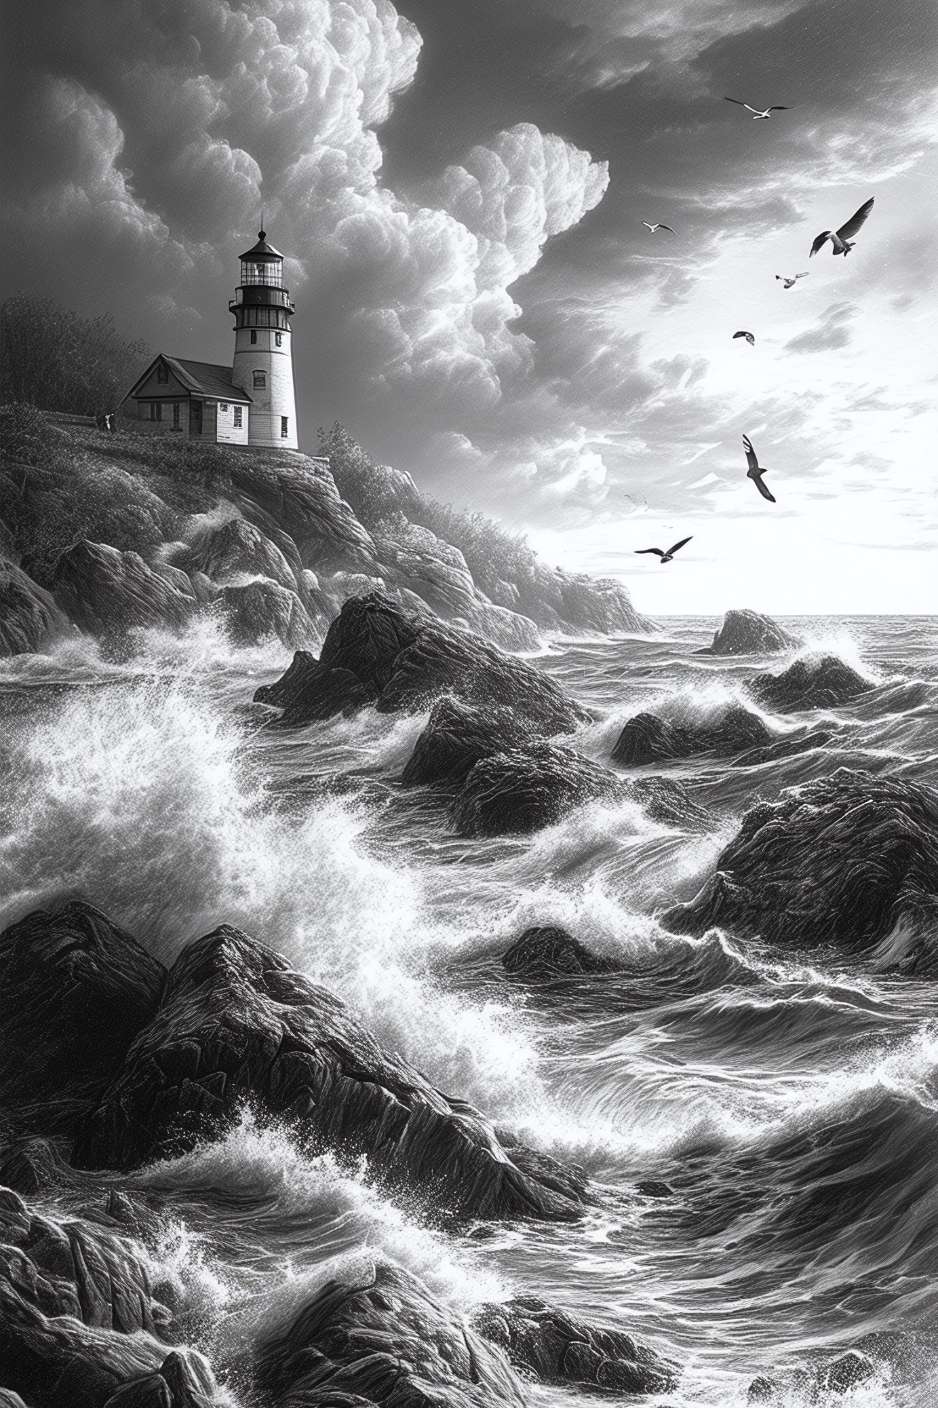 Une tempête majestueuse frappe les rochers sous la garde éternelle d'un phare héroïque